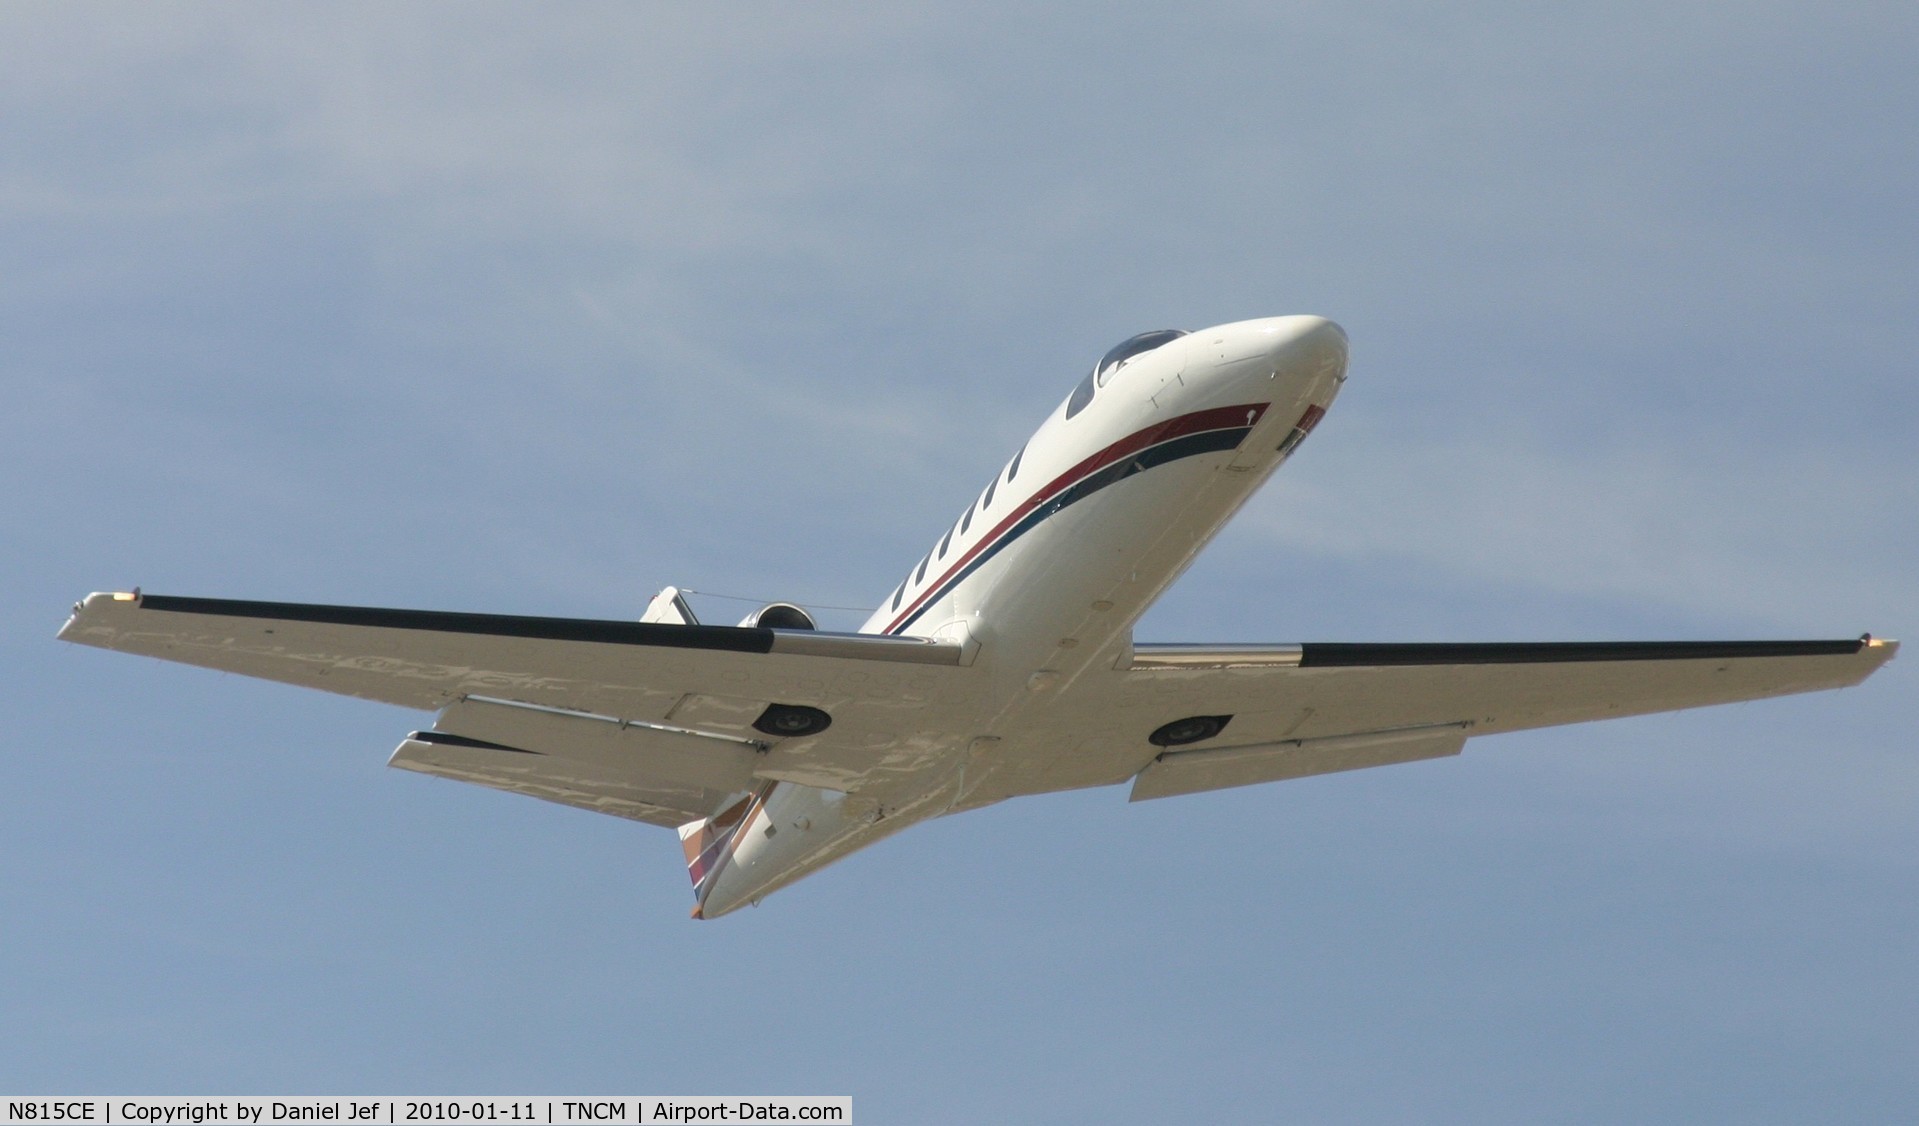 N815CE, 1980 Cessna 550 C/N 550-0204, N815CE departing TNCM